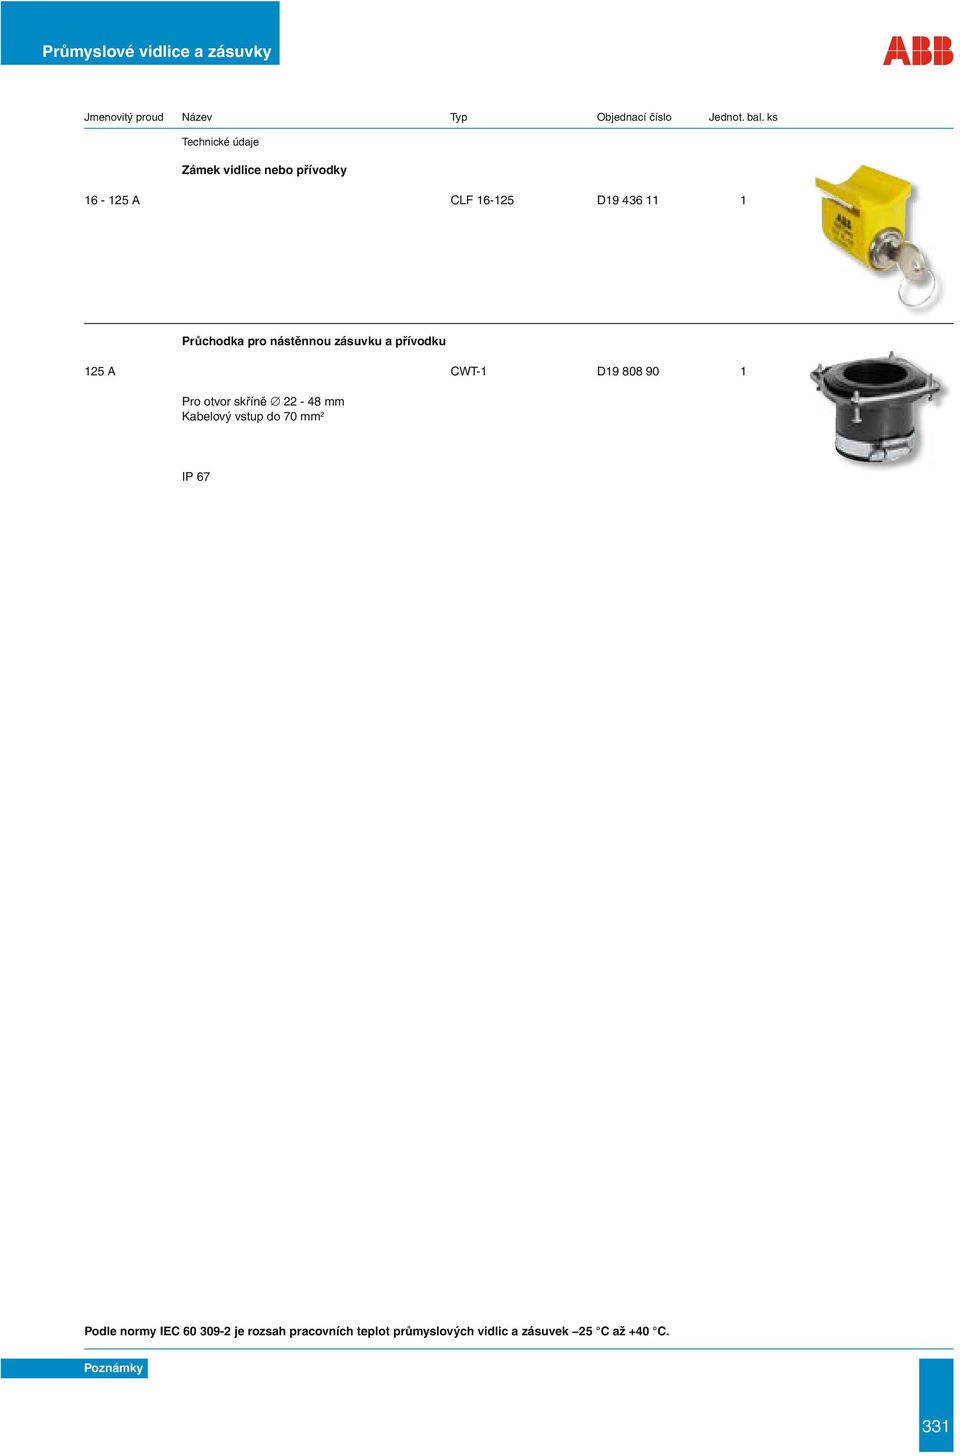 skříně 22-48 mm Kabelový vstup do 70 mm 2 IP 67 Podle normy IEC 60